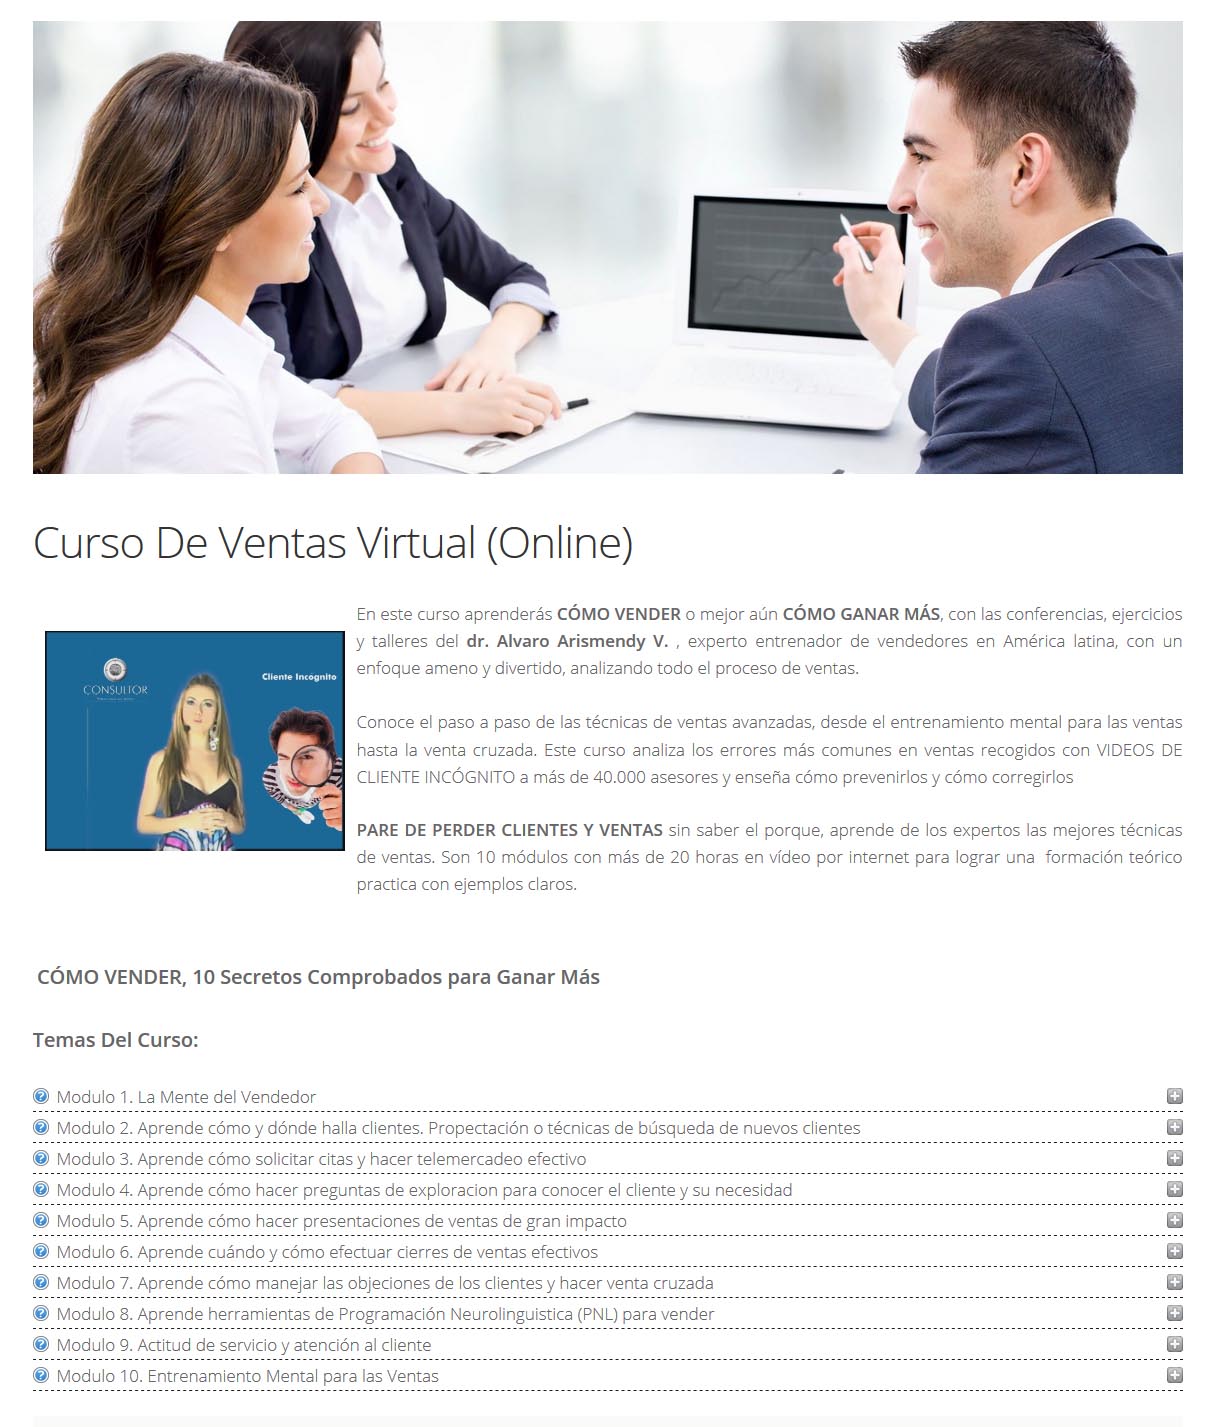 Curso de ventas virtual - Alvaro Arismendy